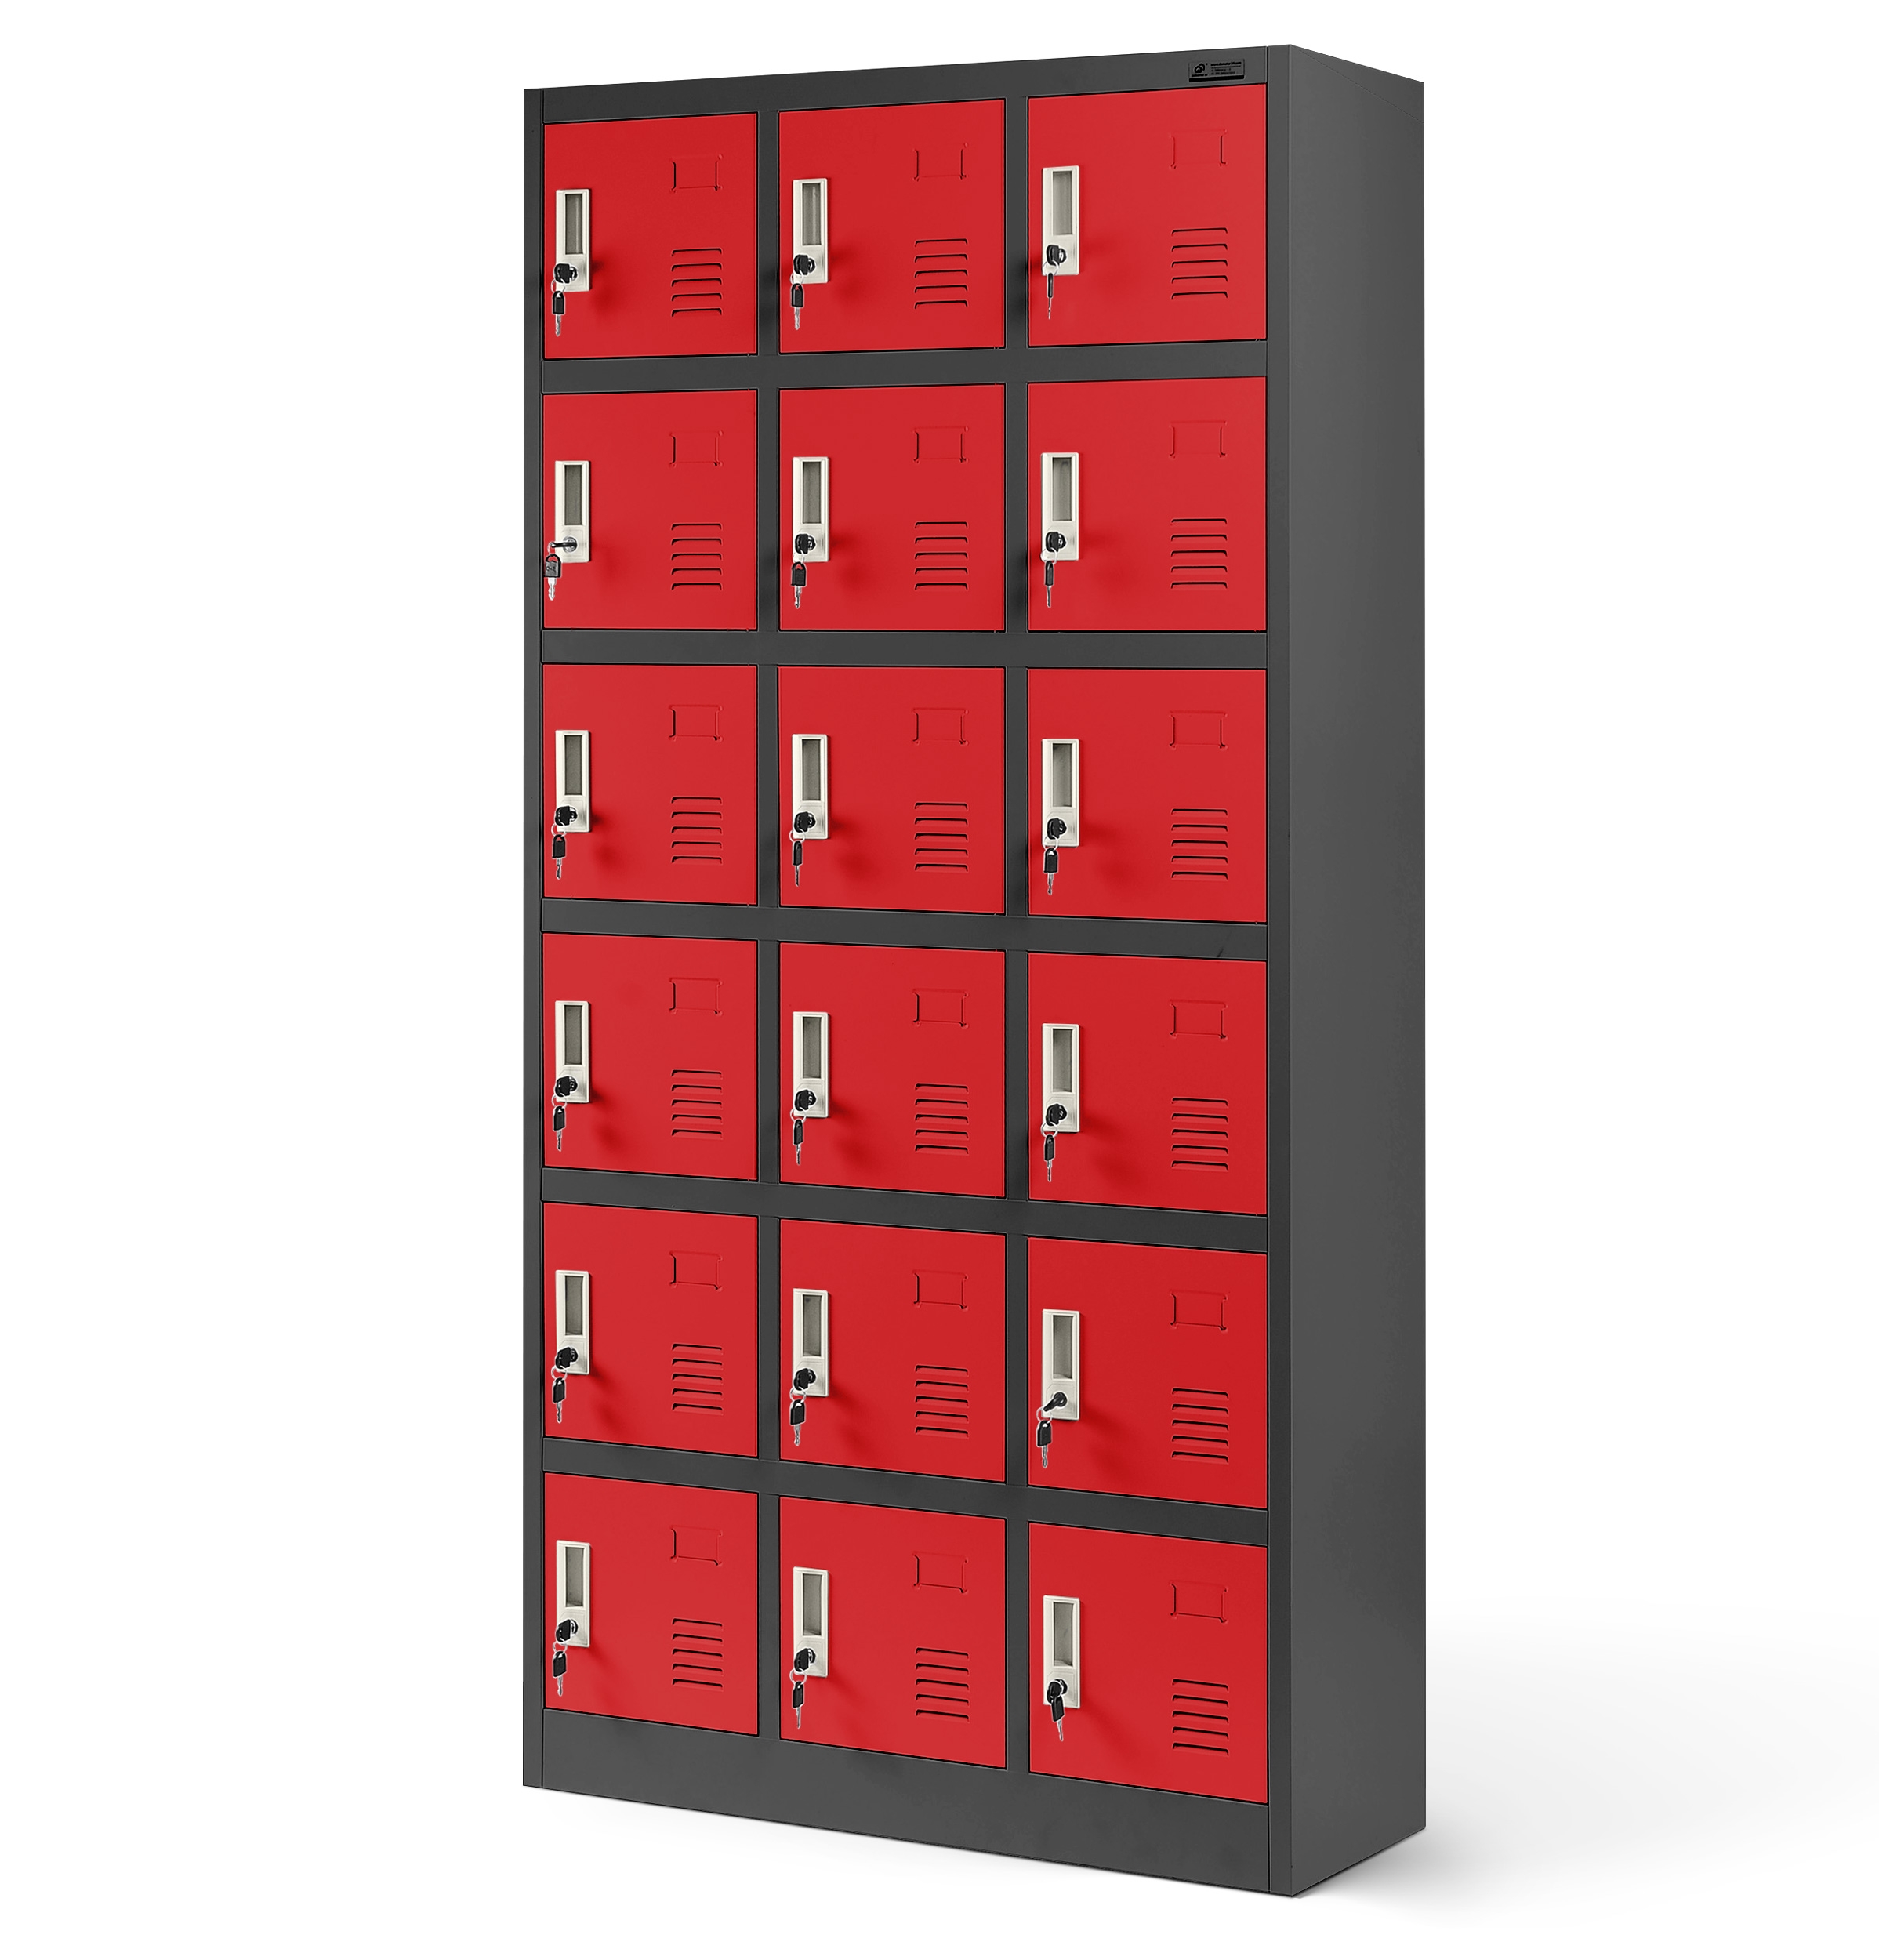 JAN NOWAK model KAROL 900 x 1850 x 400 skrytkowa szafa socjalna: antracytowo-czerwona - Jan Nowak zdjęcie 1